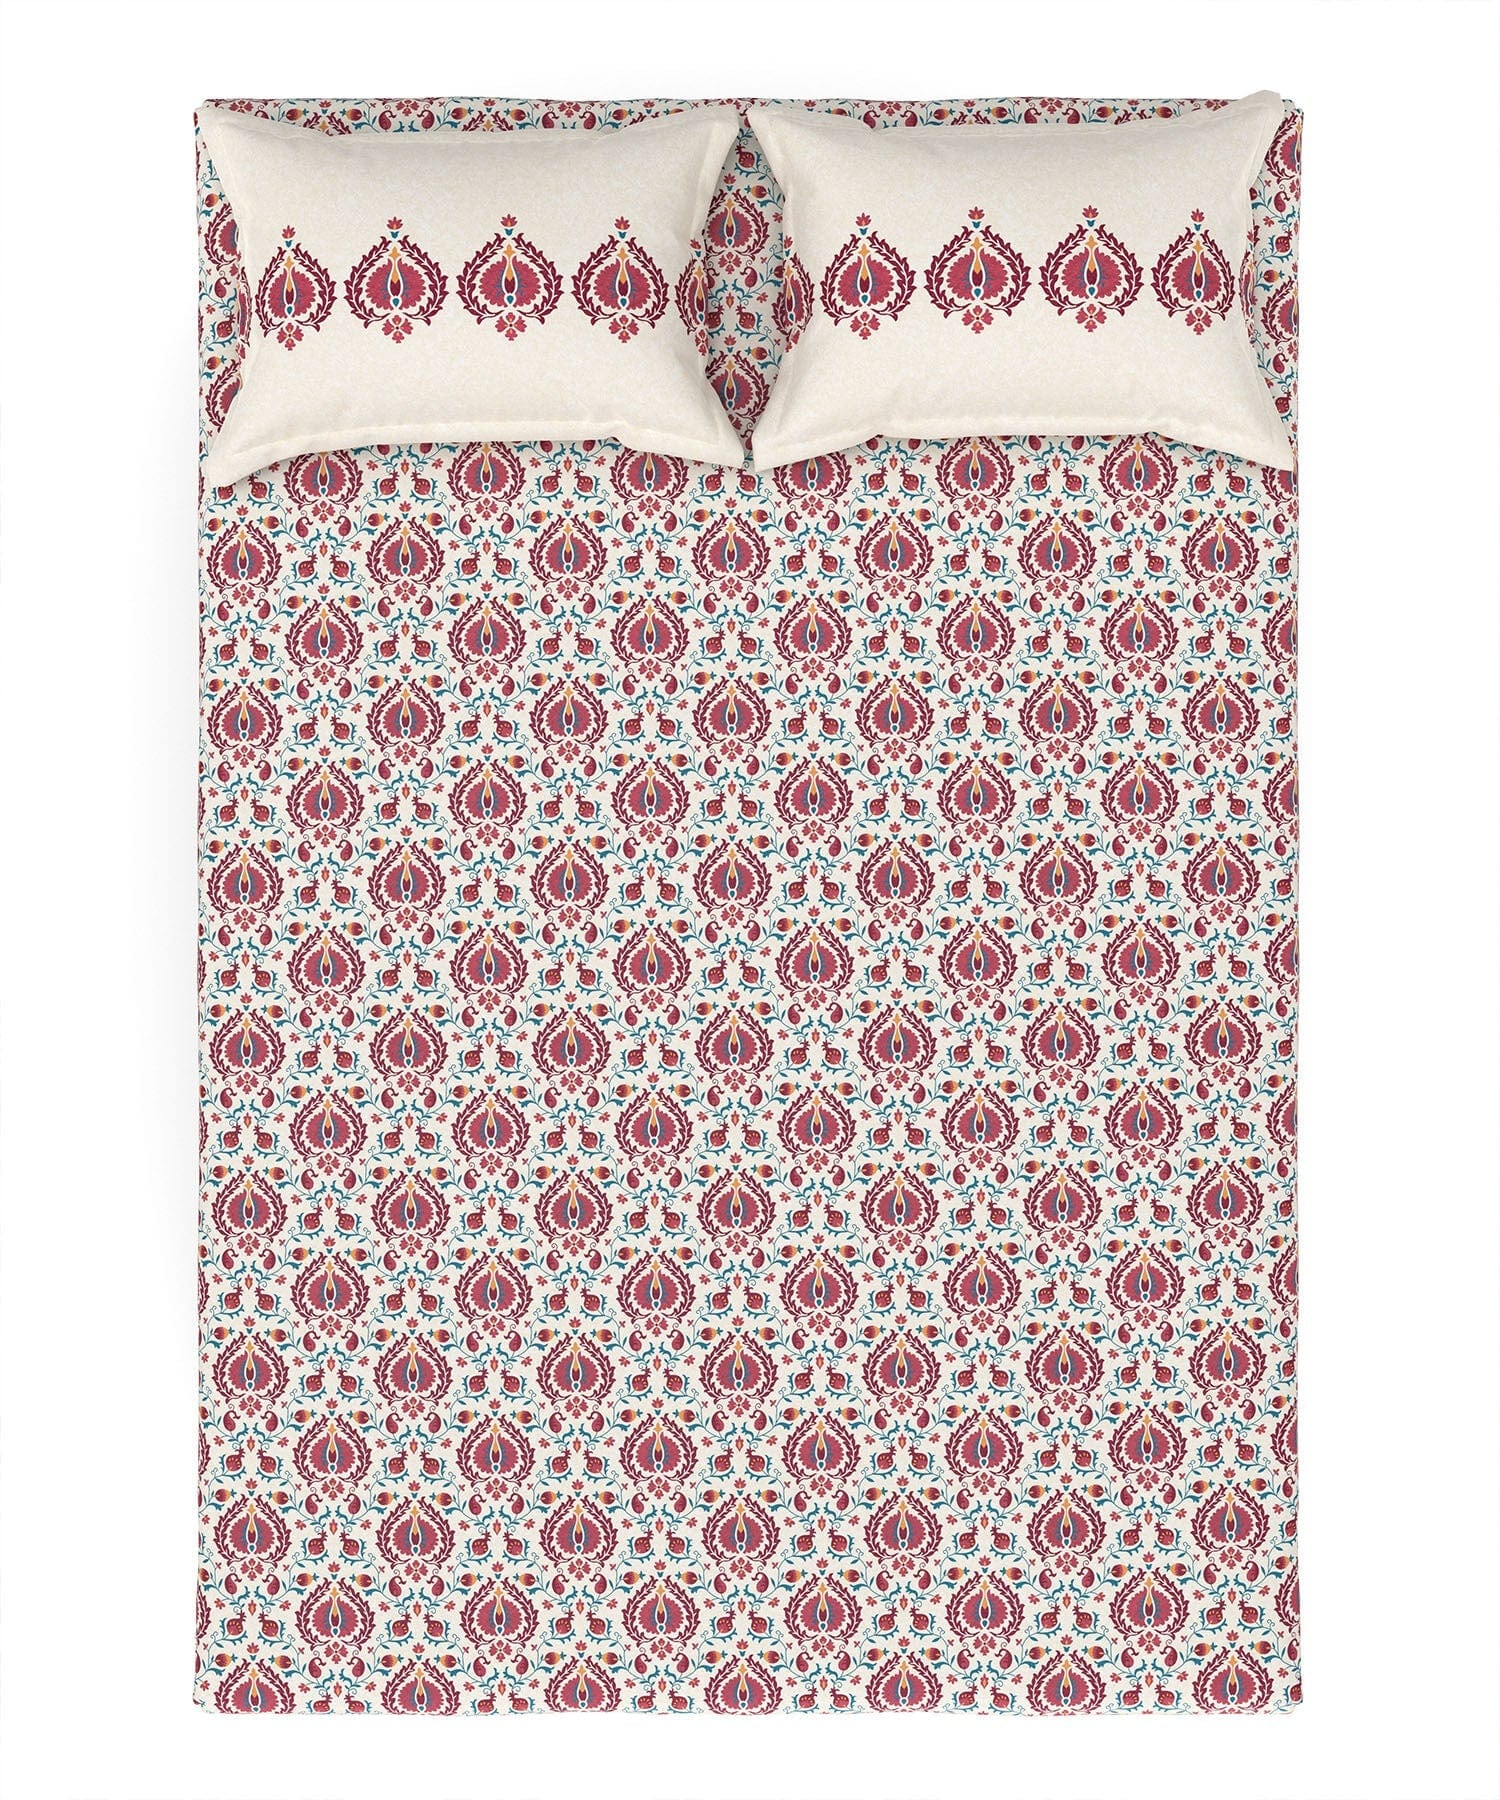 Queen Bedsheet ₹1839/-